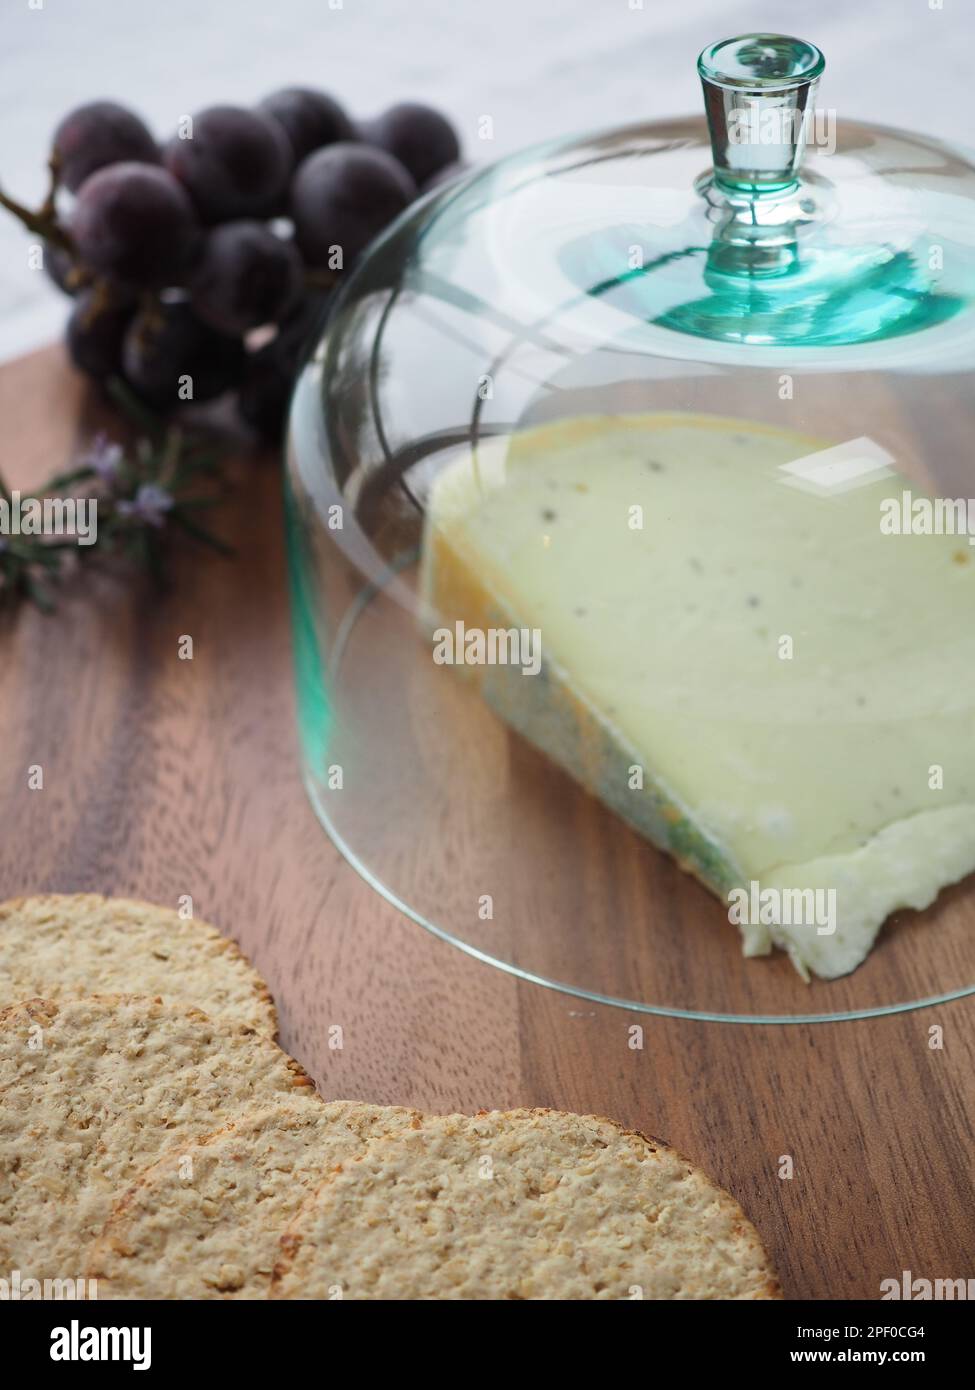 Gros plan d'un coin de fromage gouda sur une planche en bois sous un cloche ou un dôme en verre (cloche) avec des gâteaux d'avoine et des raisins violets sur le côté Banque D'Images